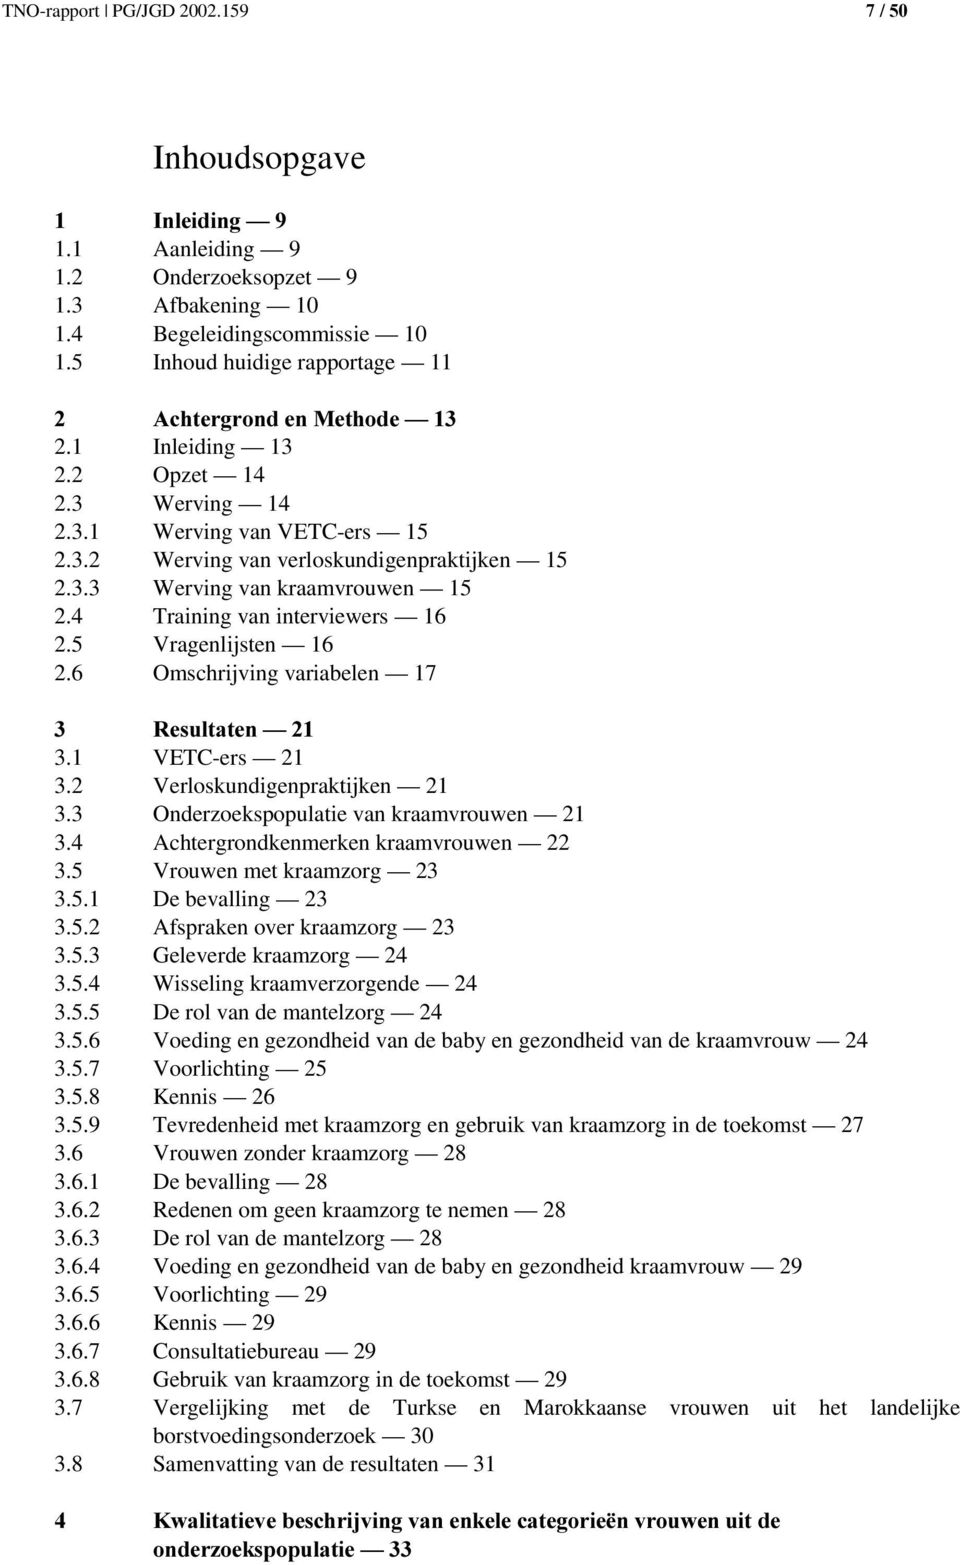 5 Vragenlijsten 16 2.6 Omschrijving variabelen 17 5HVXOWDWHQ² 3.1 VETC-ers 21 3.2 Verloskundigenpraktijken 21 3.3 Onderzoekspopulatie van kraamvrouwen 21 3.4 Achtergrondkenmerken kraamvrouwen 22 3.